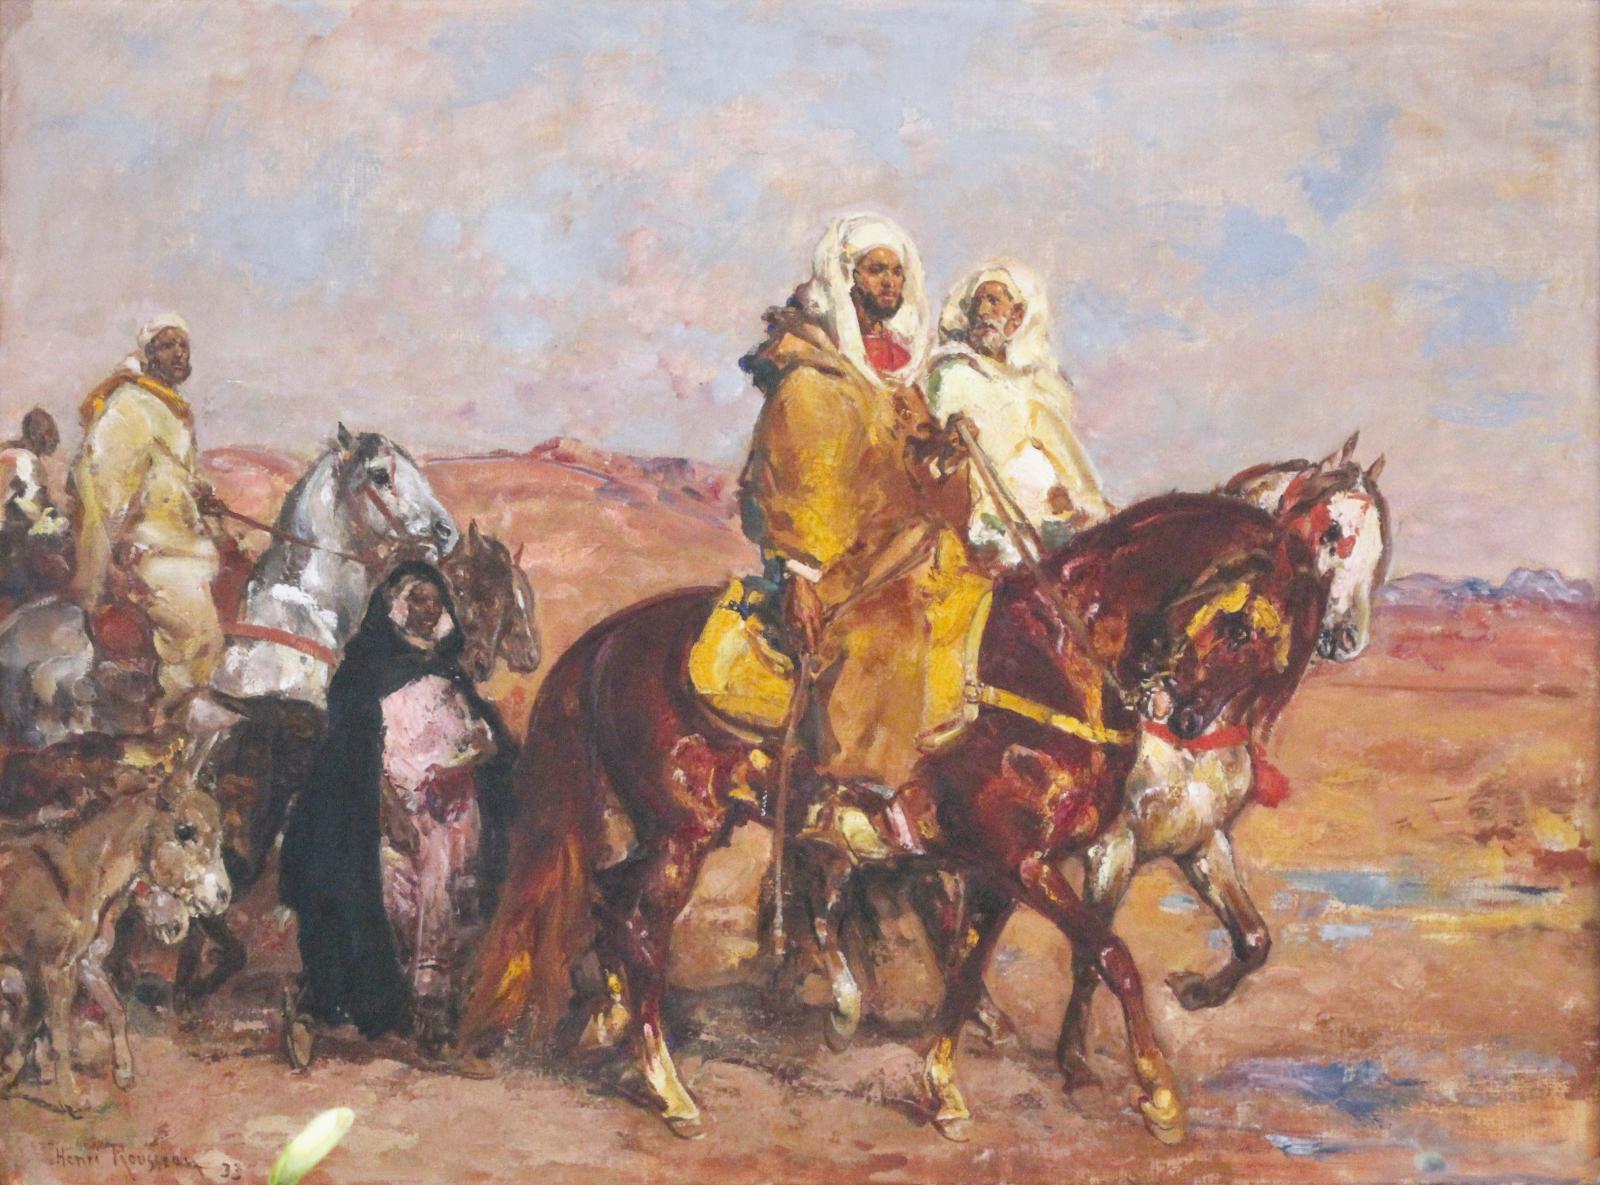 Les voyageurs marocains de Rousseau